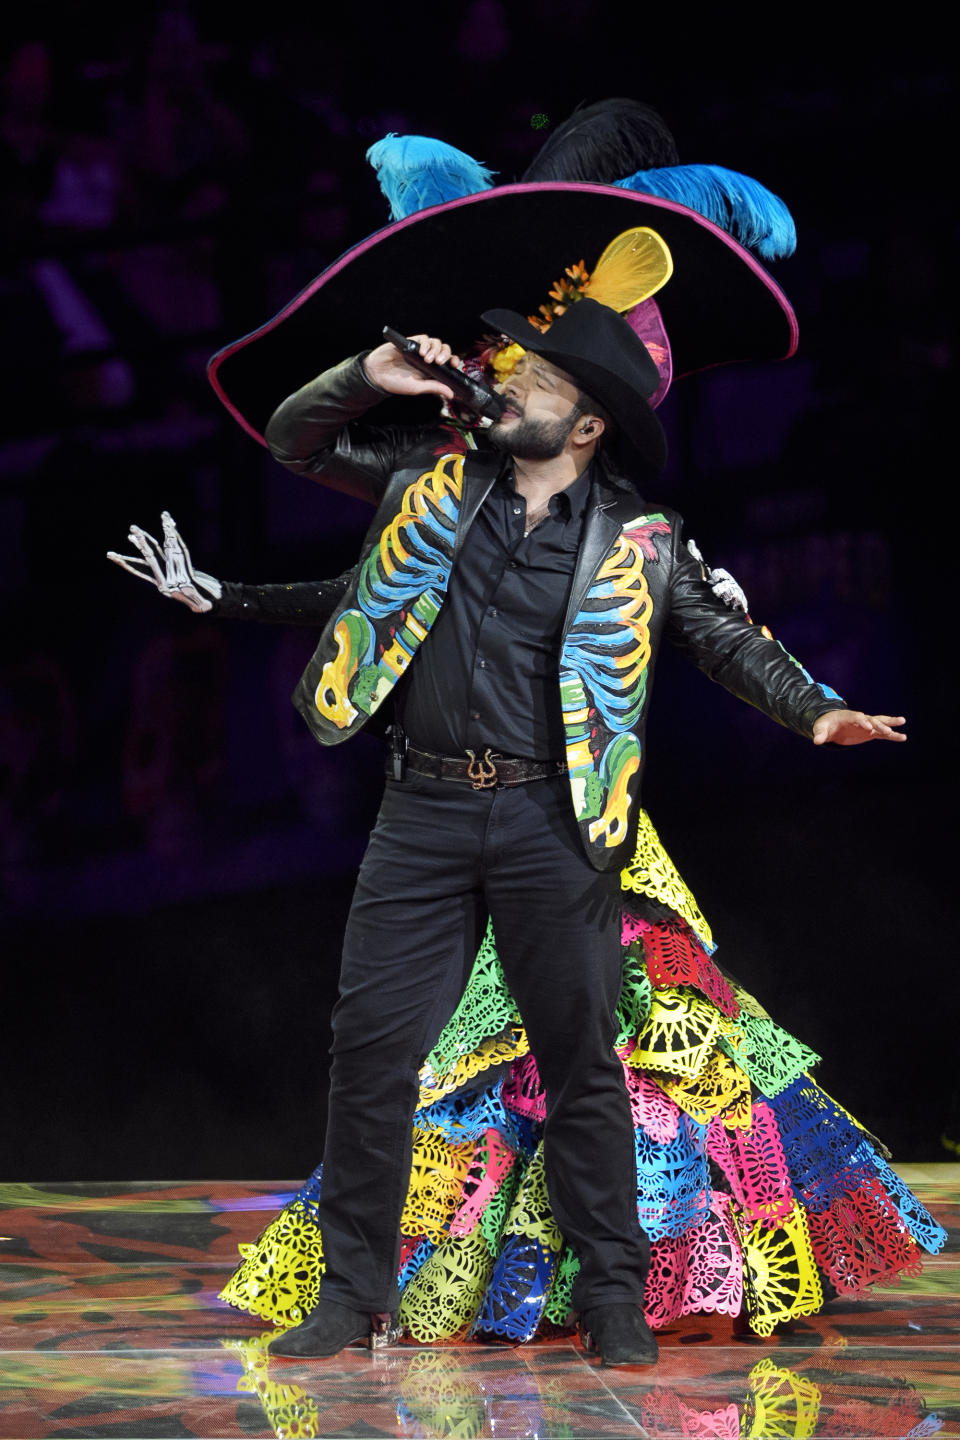 El cantante mexicano Leonardo Aguilar, hijo del cantautor Pepe Aguilar, se presenta en el espectáculo "Jaripeo hasta los huesos tour 2024" en el Honda Center en Anaheim, California, el viernes 29 de marzo de 2024. El espectáculo rinde homenaje al Día de Muertos, una conocida celebración mexicana. (Foto AP/Damian Dovarganes)